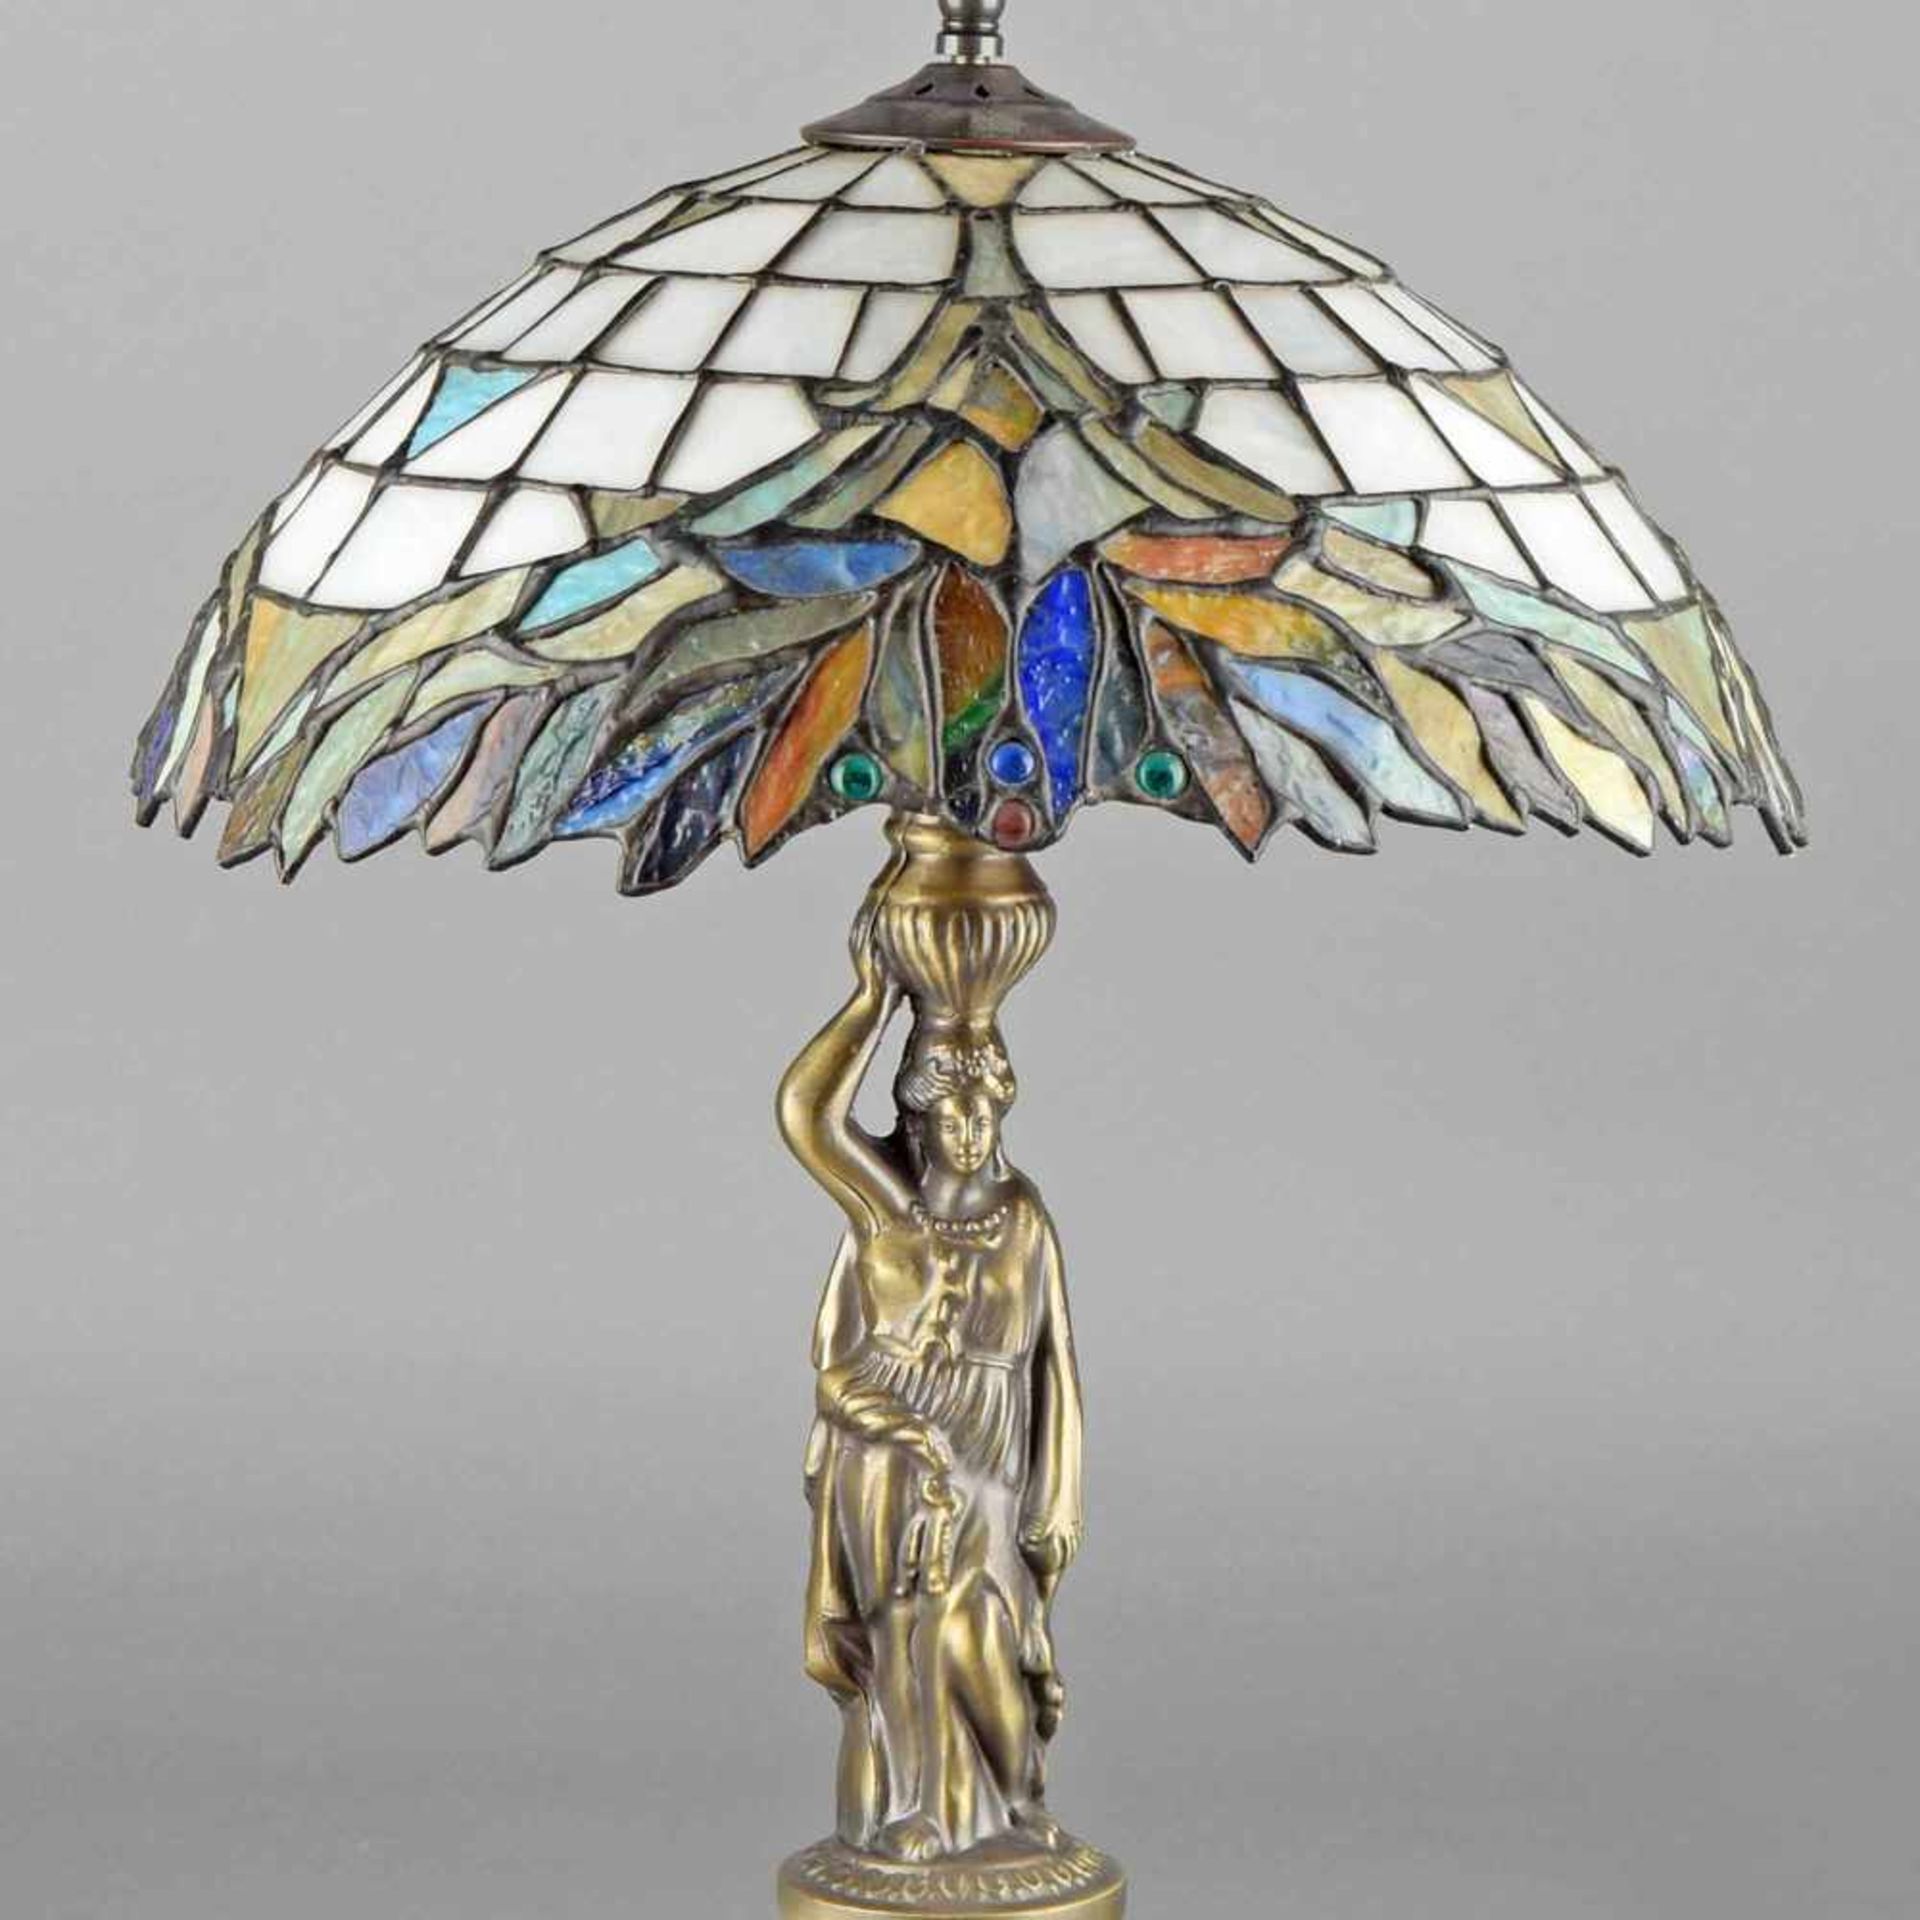 Tischleuchte im Tiffany-Stil, Metallguss, einflammig elektrifiziert, über reich reliefiertem Fuß